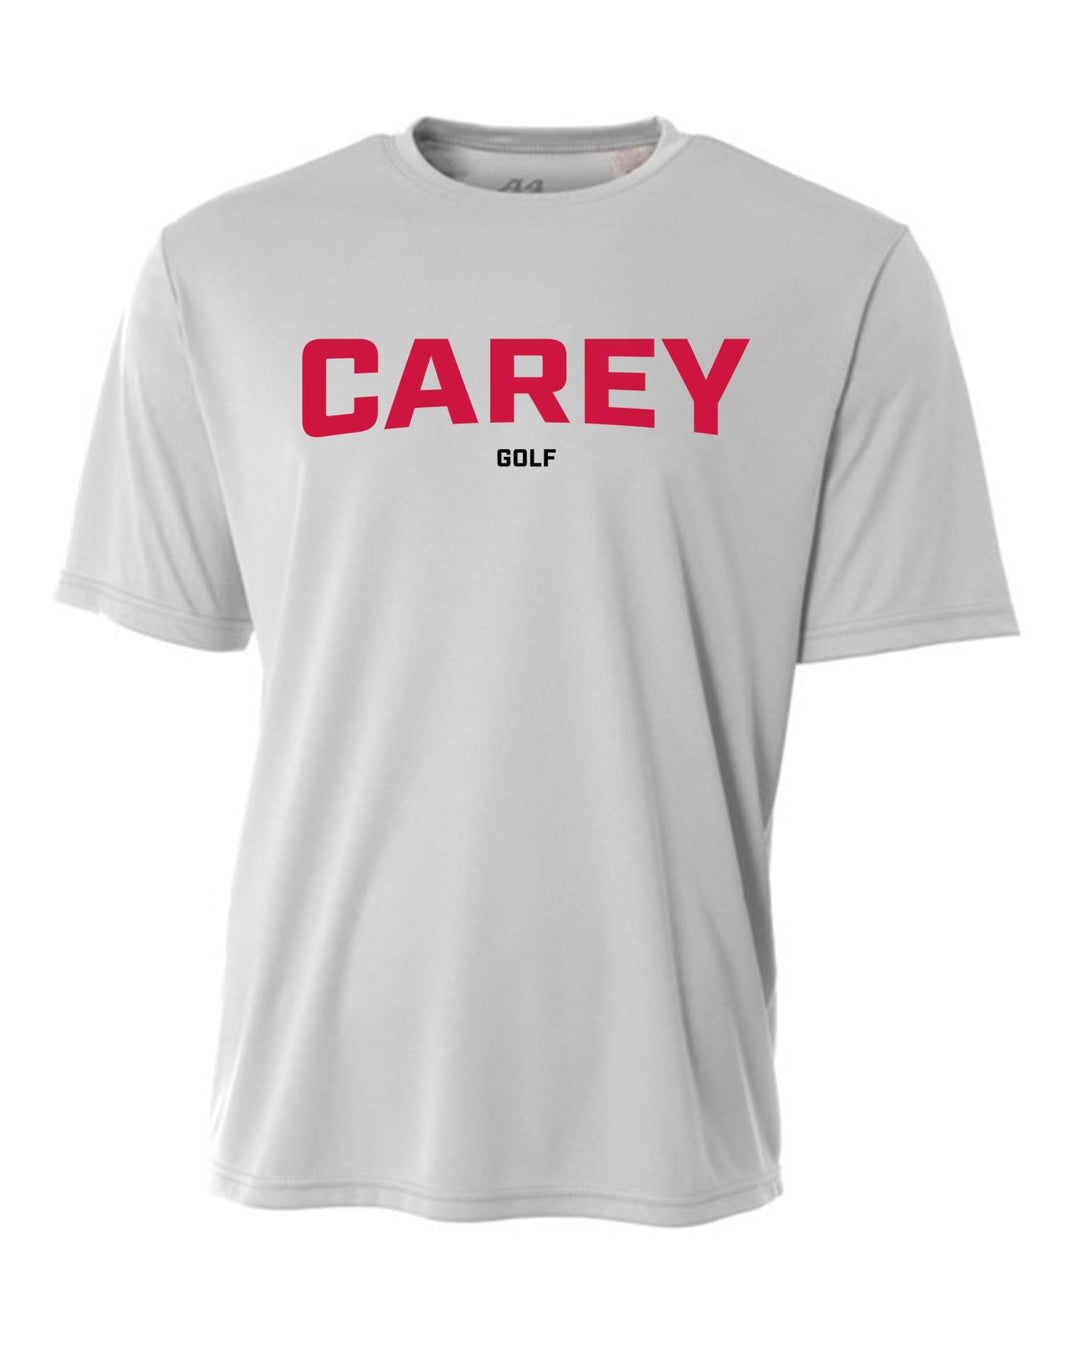 WCU Golf Youth Short-Sleeve Performance Shirt WCU Golf Silver CAREY - Third Coast Soccer